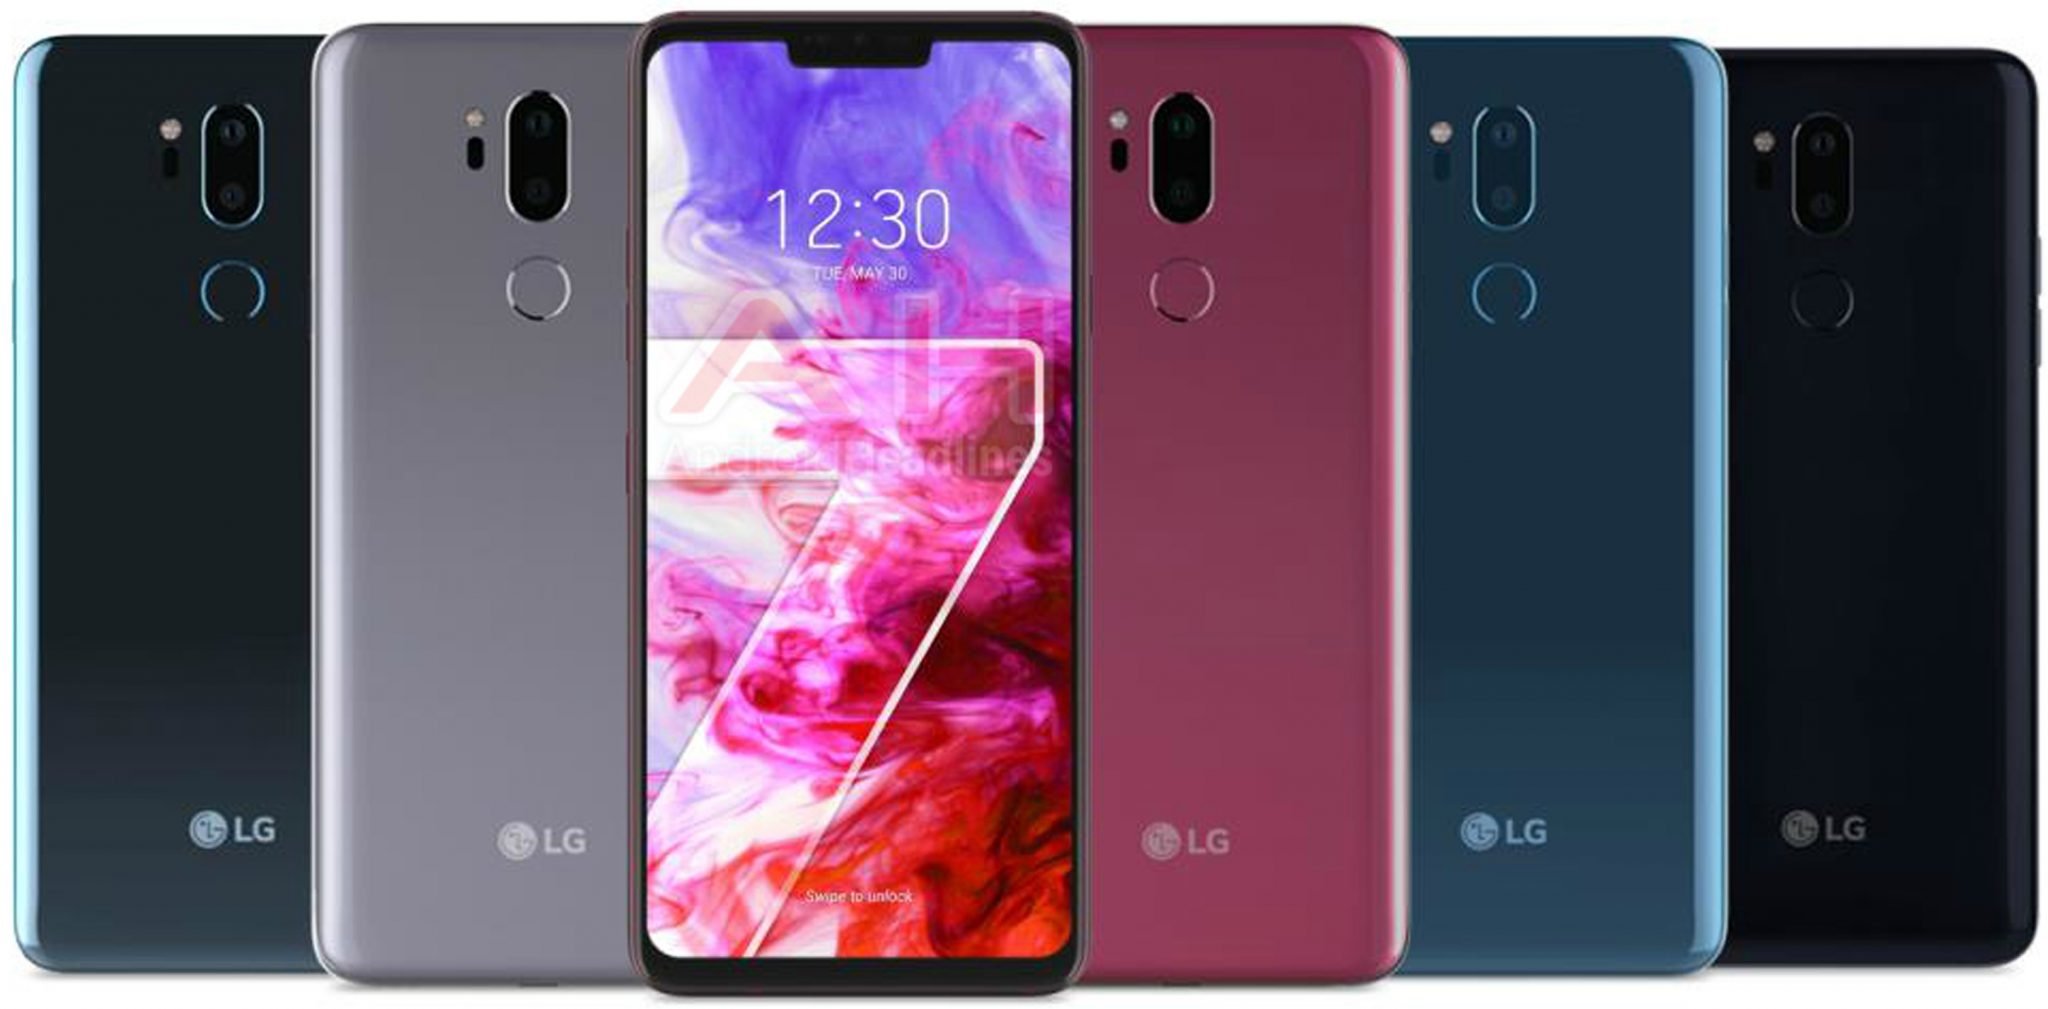 Especificações técnicas do LG G7 ThinQ reveladas